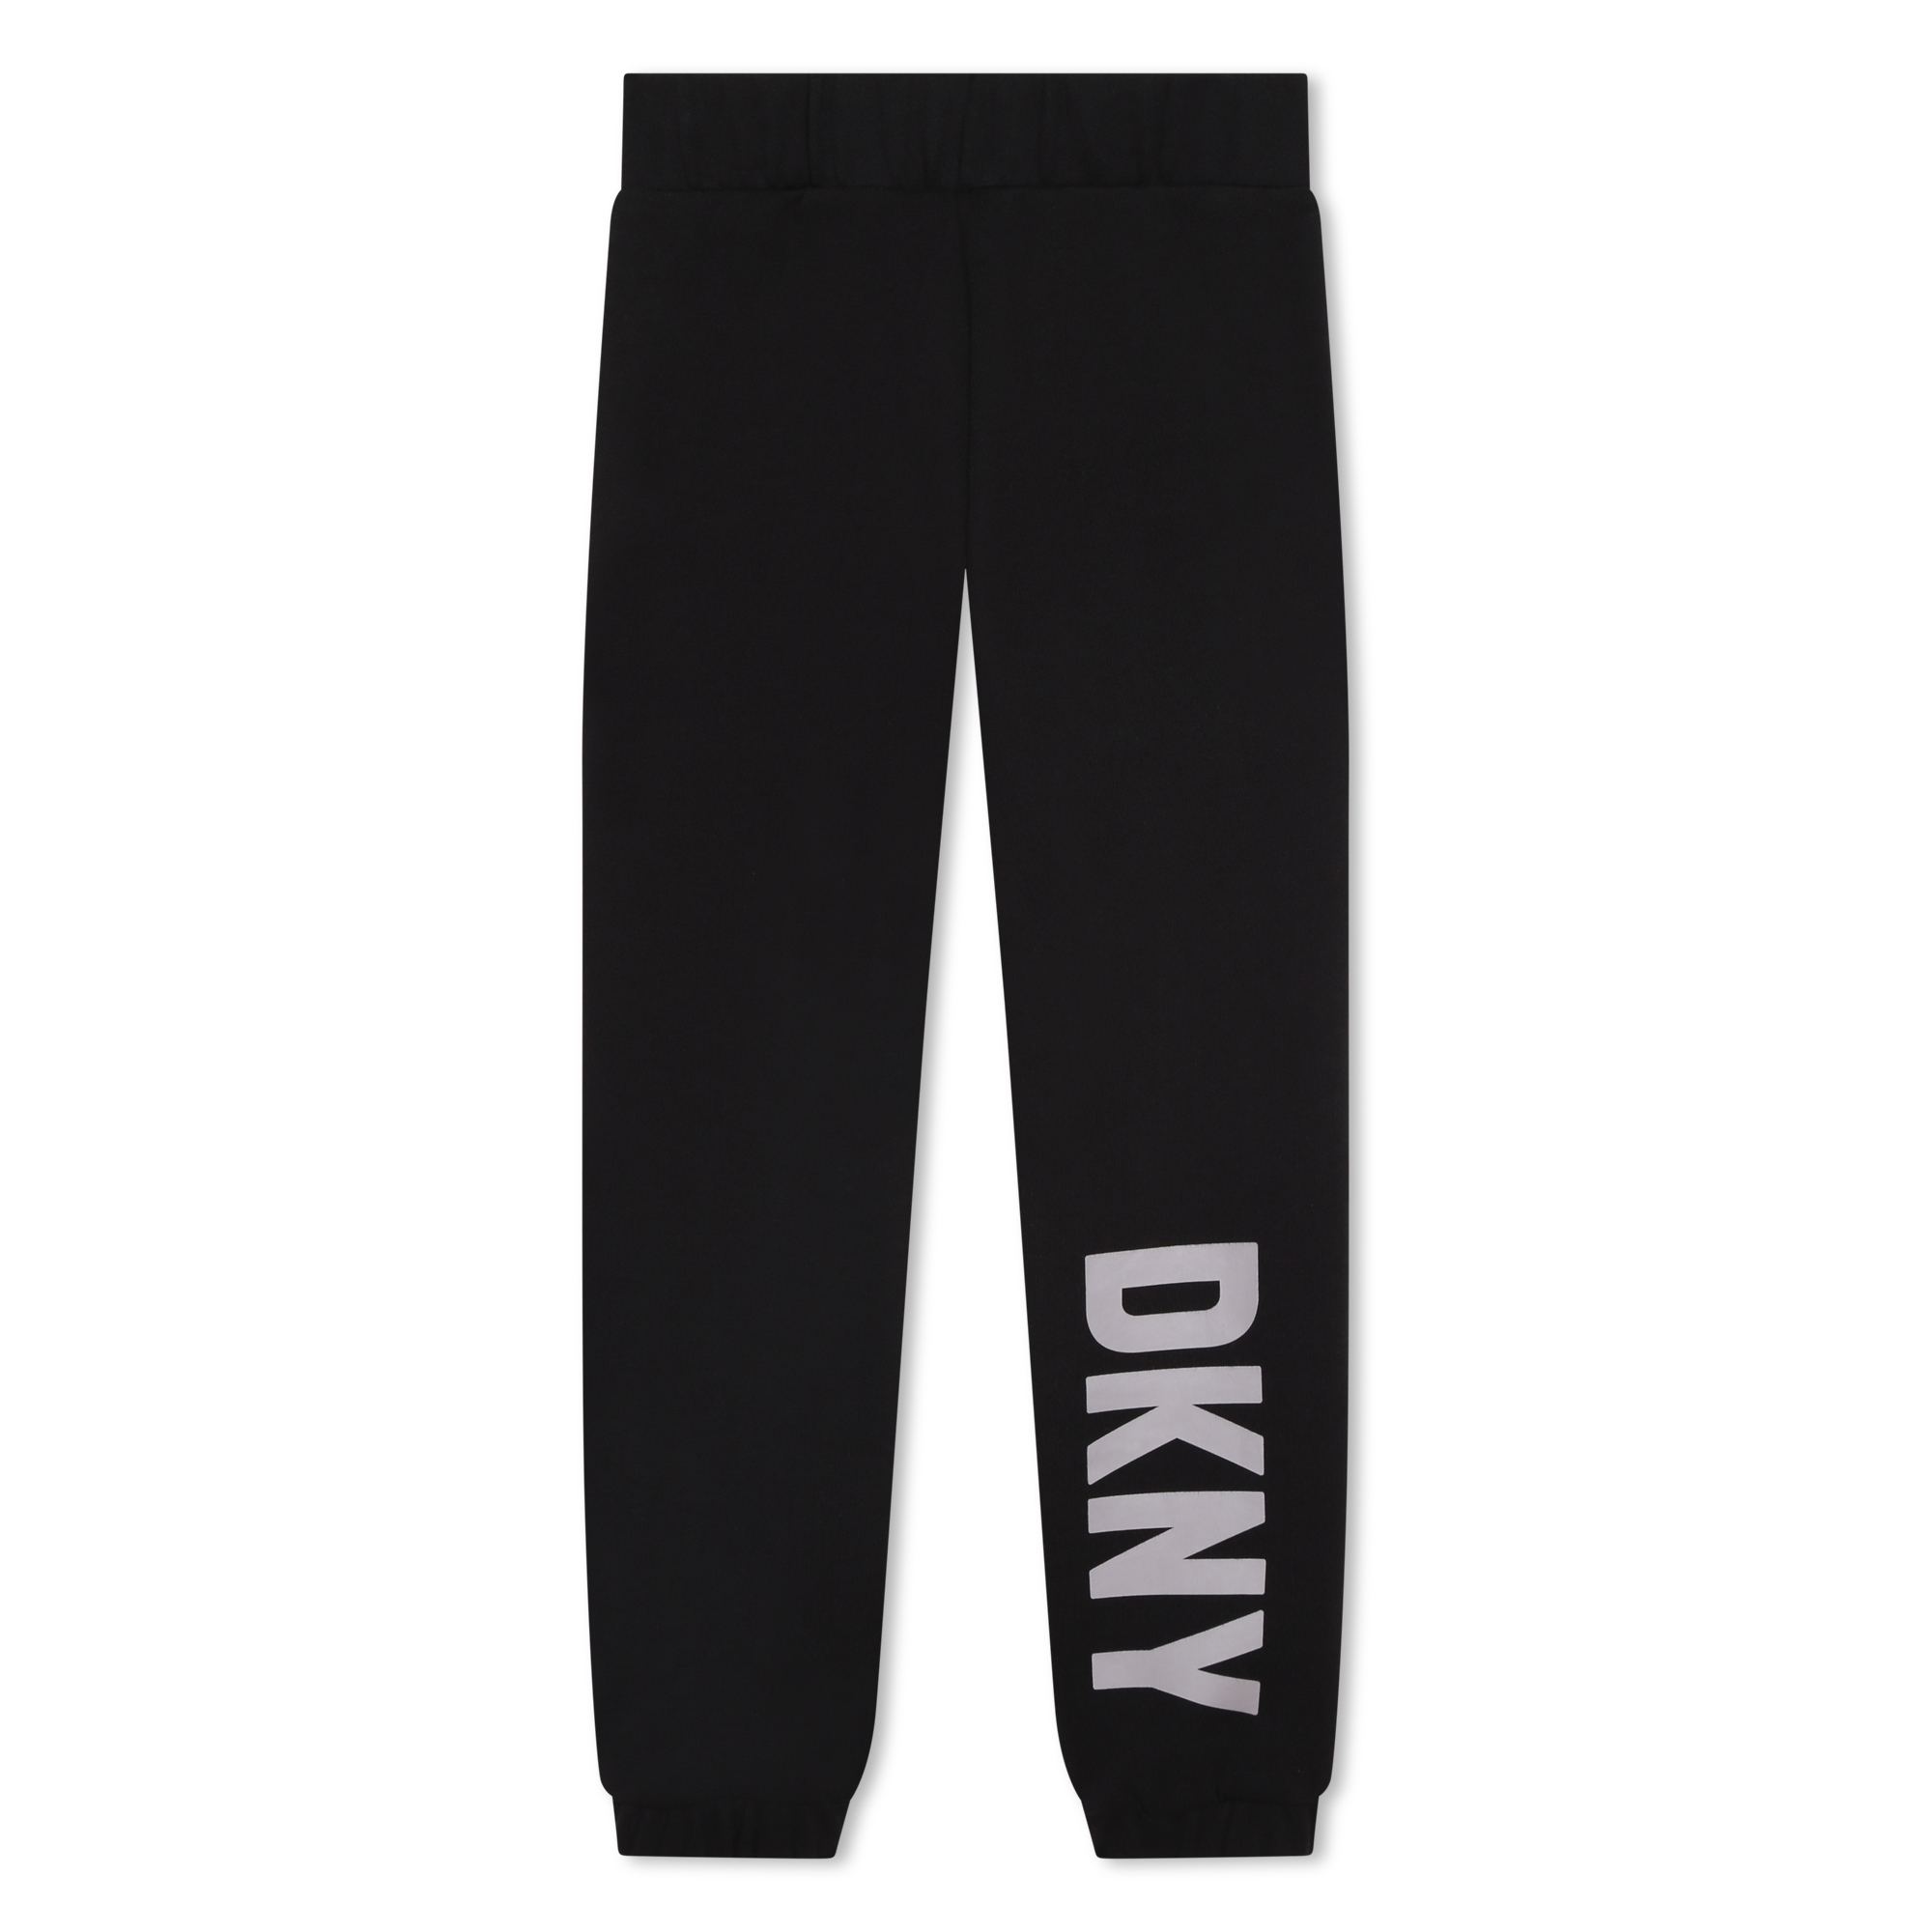 Pantalón de chándal DKNY para UNISEXO